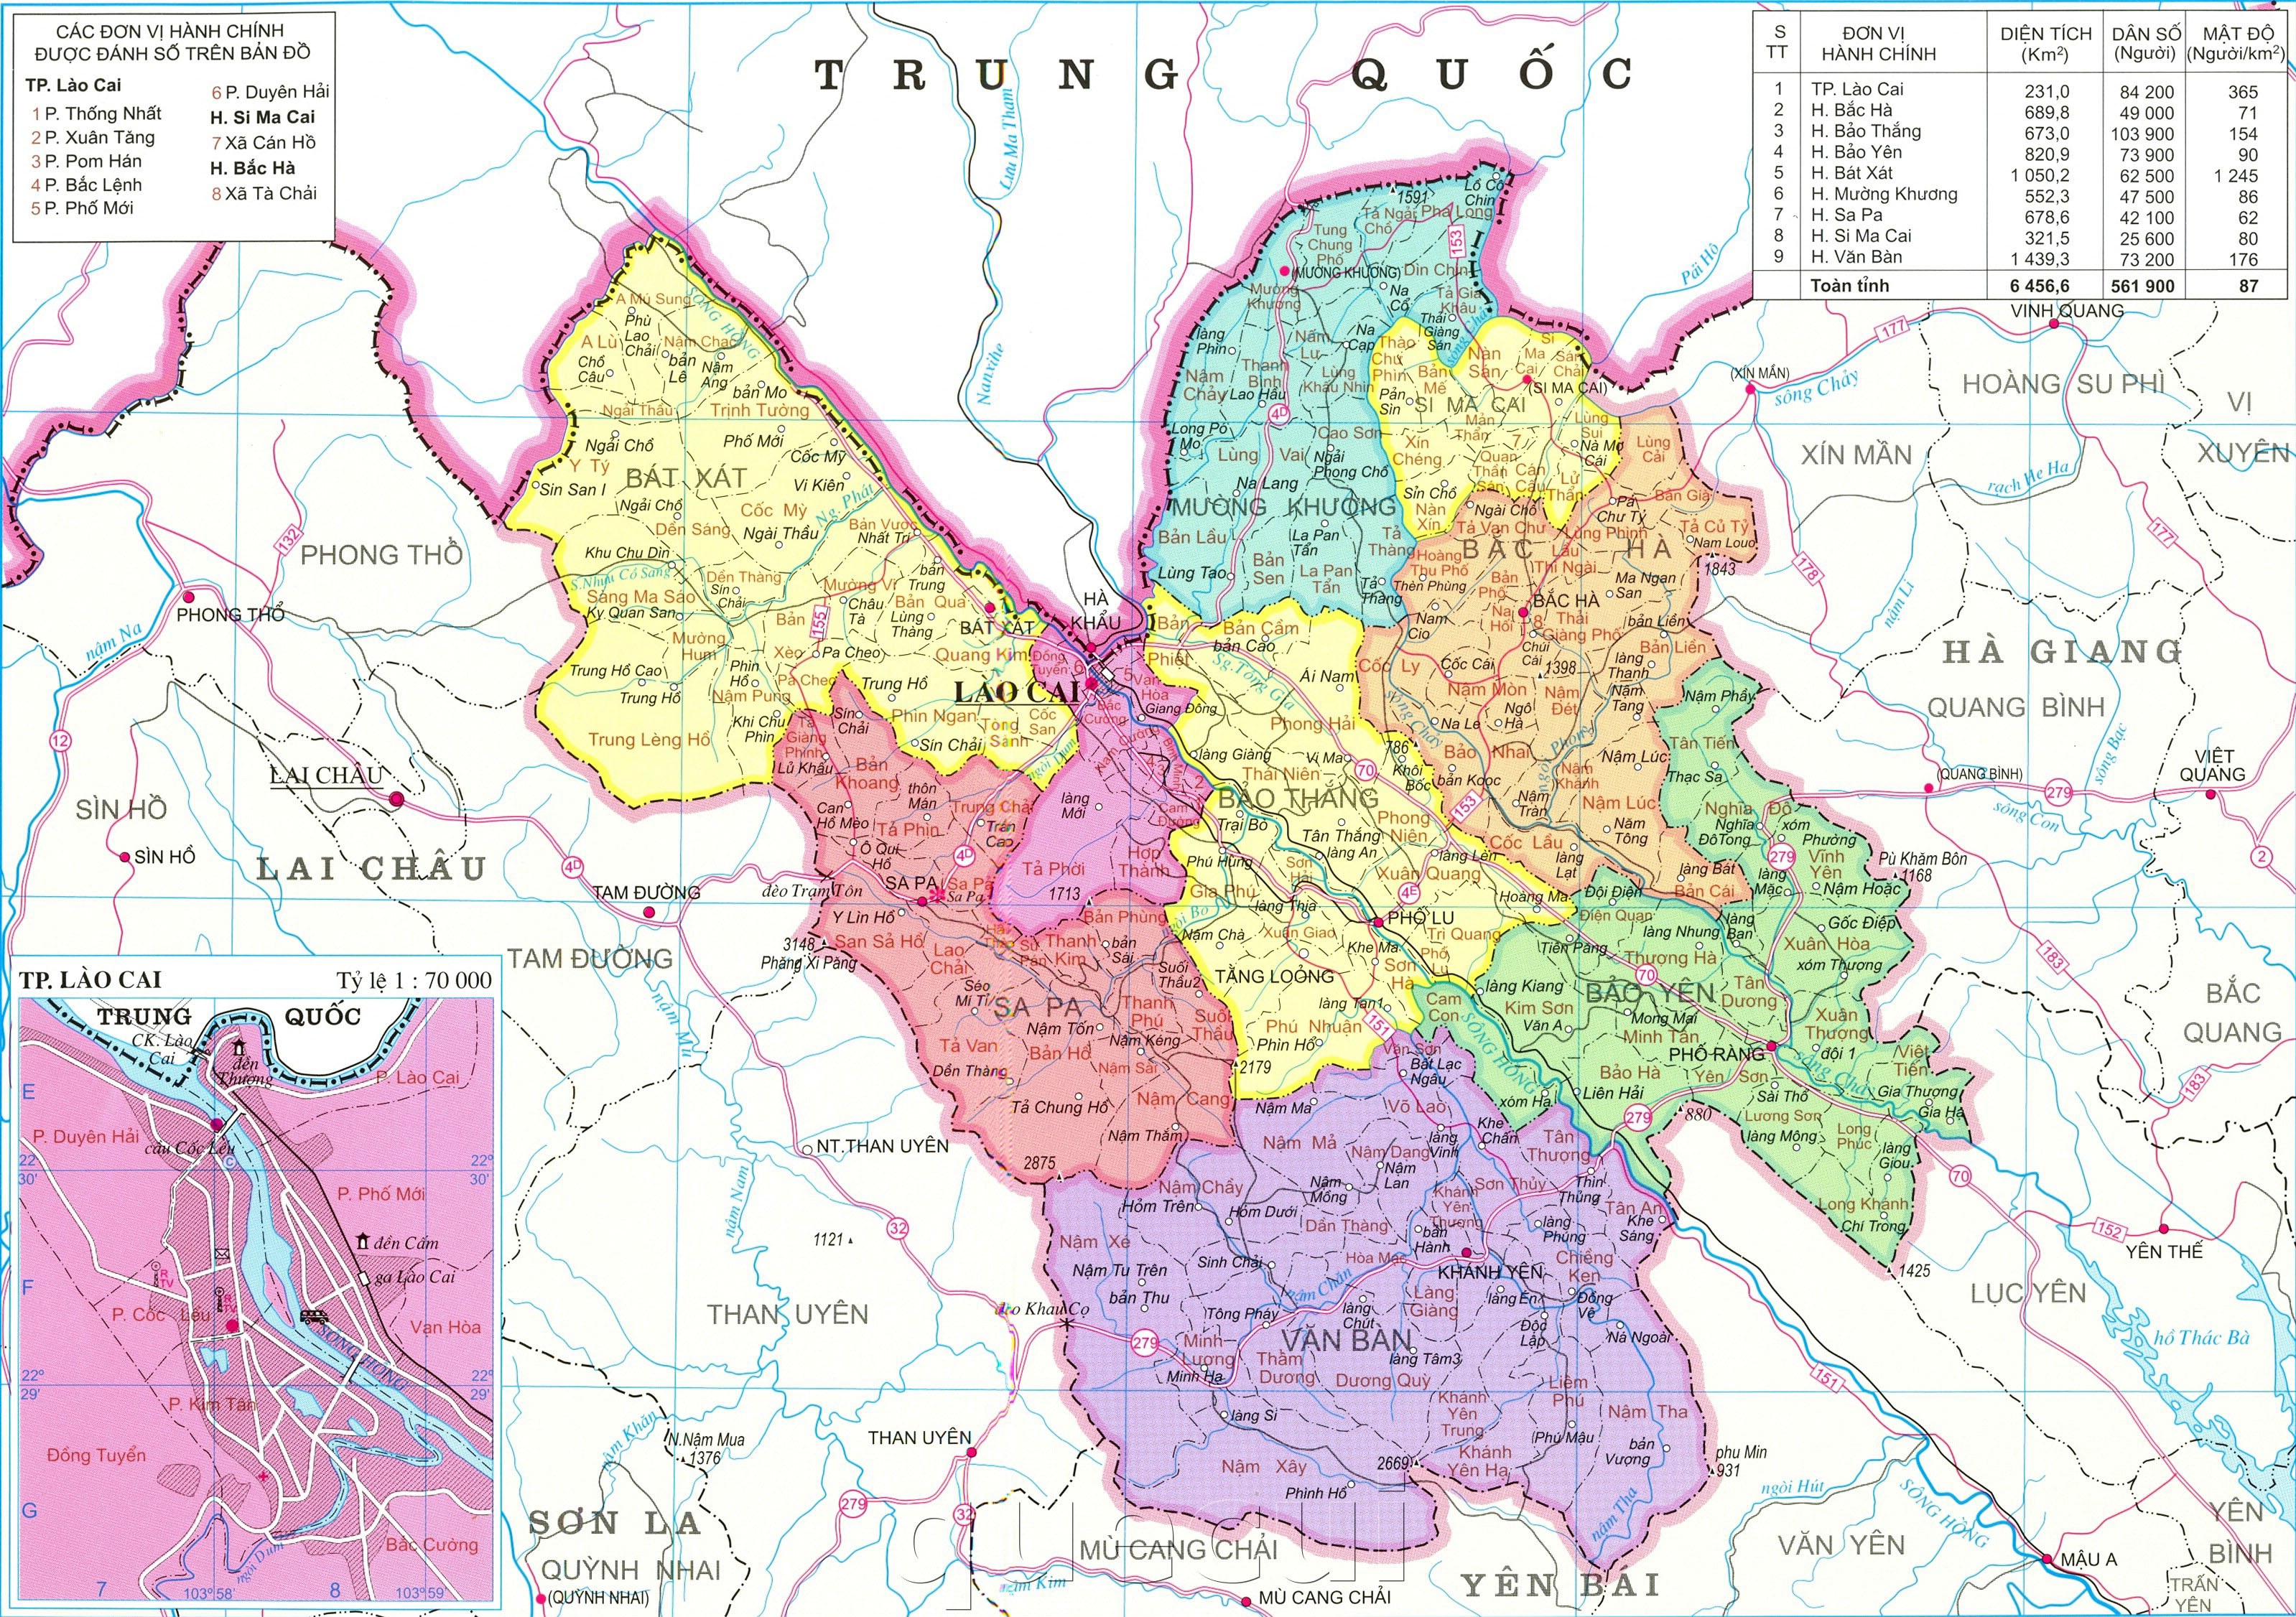 Bản đồ Hành chính tỉnh Lào Cai: Với bản đồ hành chính tỉnh Lào Cai, bạn sẽ hiểu rõ hơn về cấu trúc và lịch sử của địa phương này. Là một tỉnh miền núi, Lào Cai có nhiều địa danh nổi tiếng như Sapa, Bắc Hà hay Mường Khương, mỗi địa danh lại có một vẻ đẹp và tinh hoa riêng. Hãy cùng khám phá vùng đất phía Bắc tuyệt vời này!